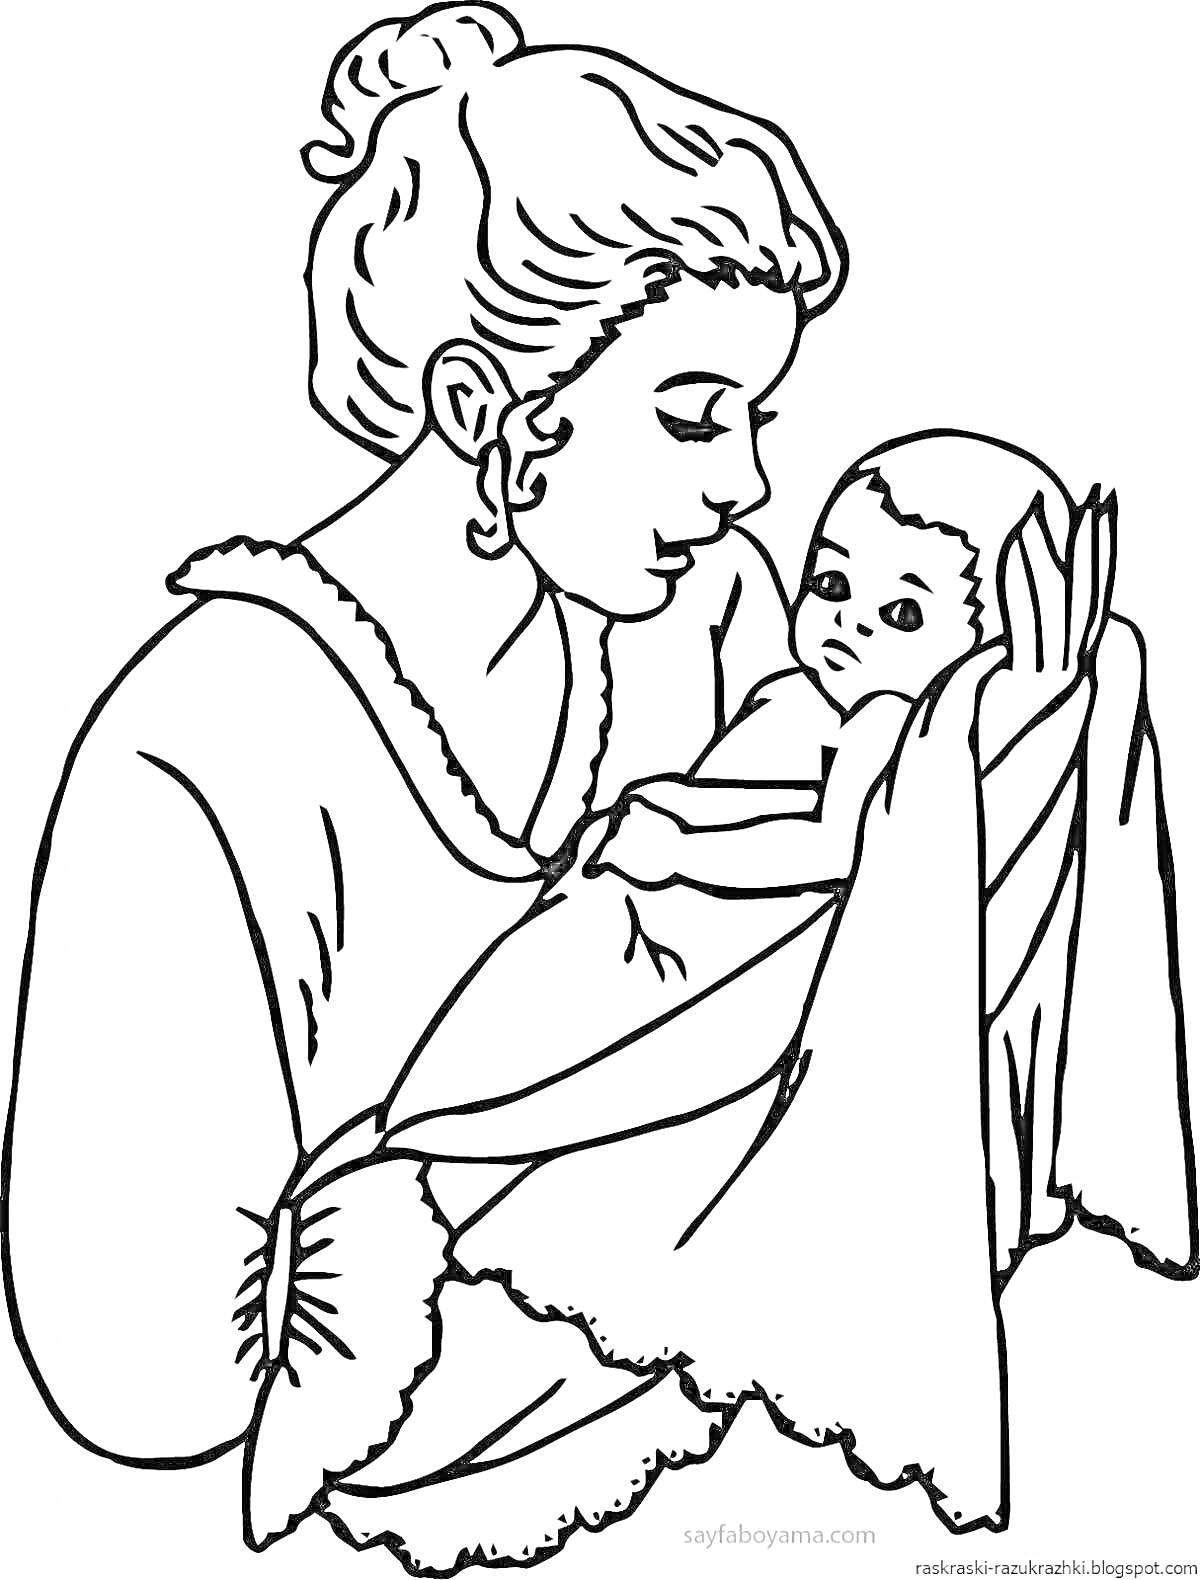 Раскраска Мама с младенцем на руках, завернутым в одеяло